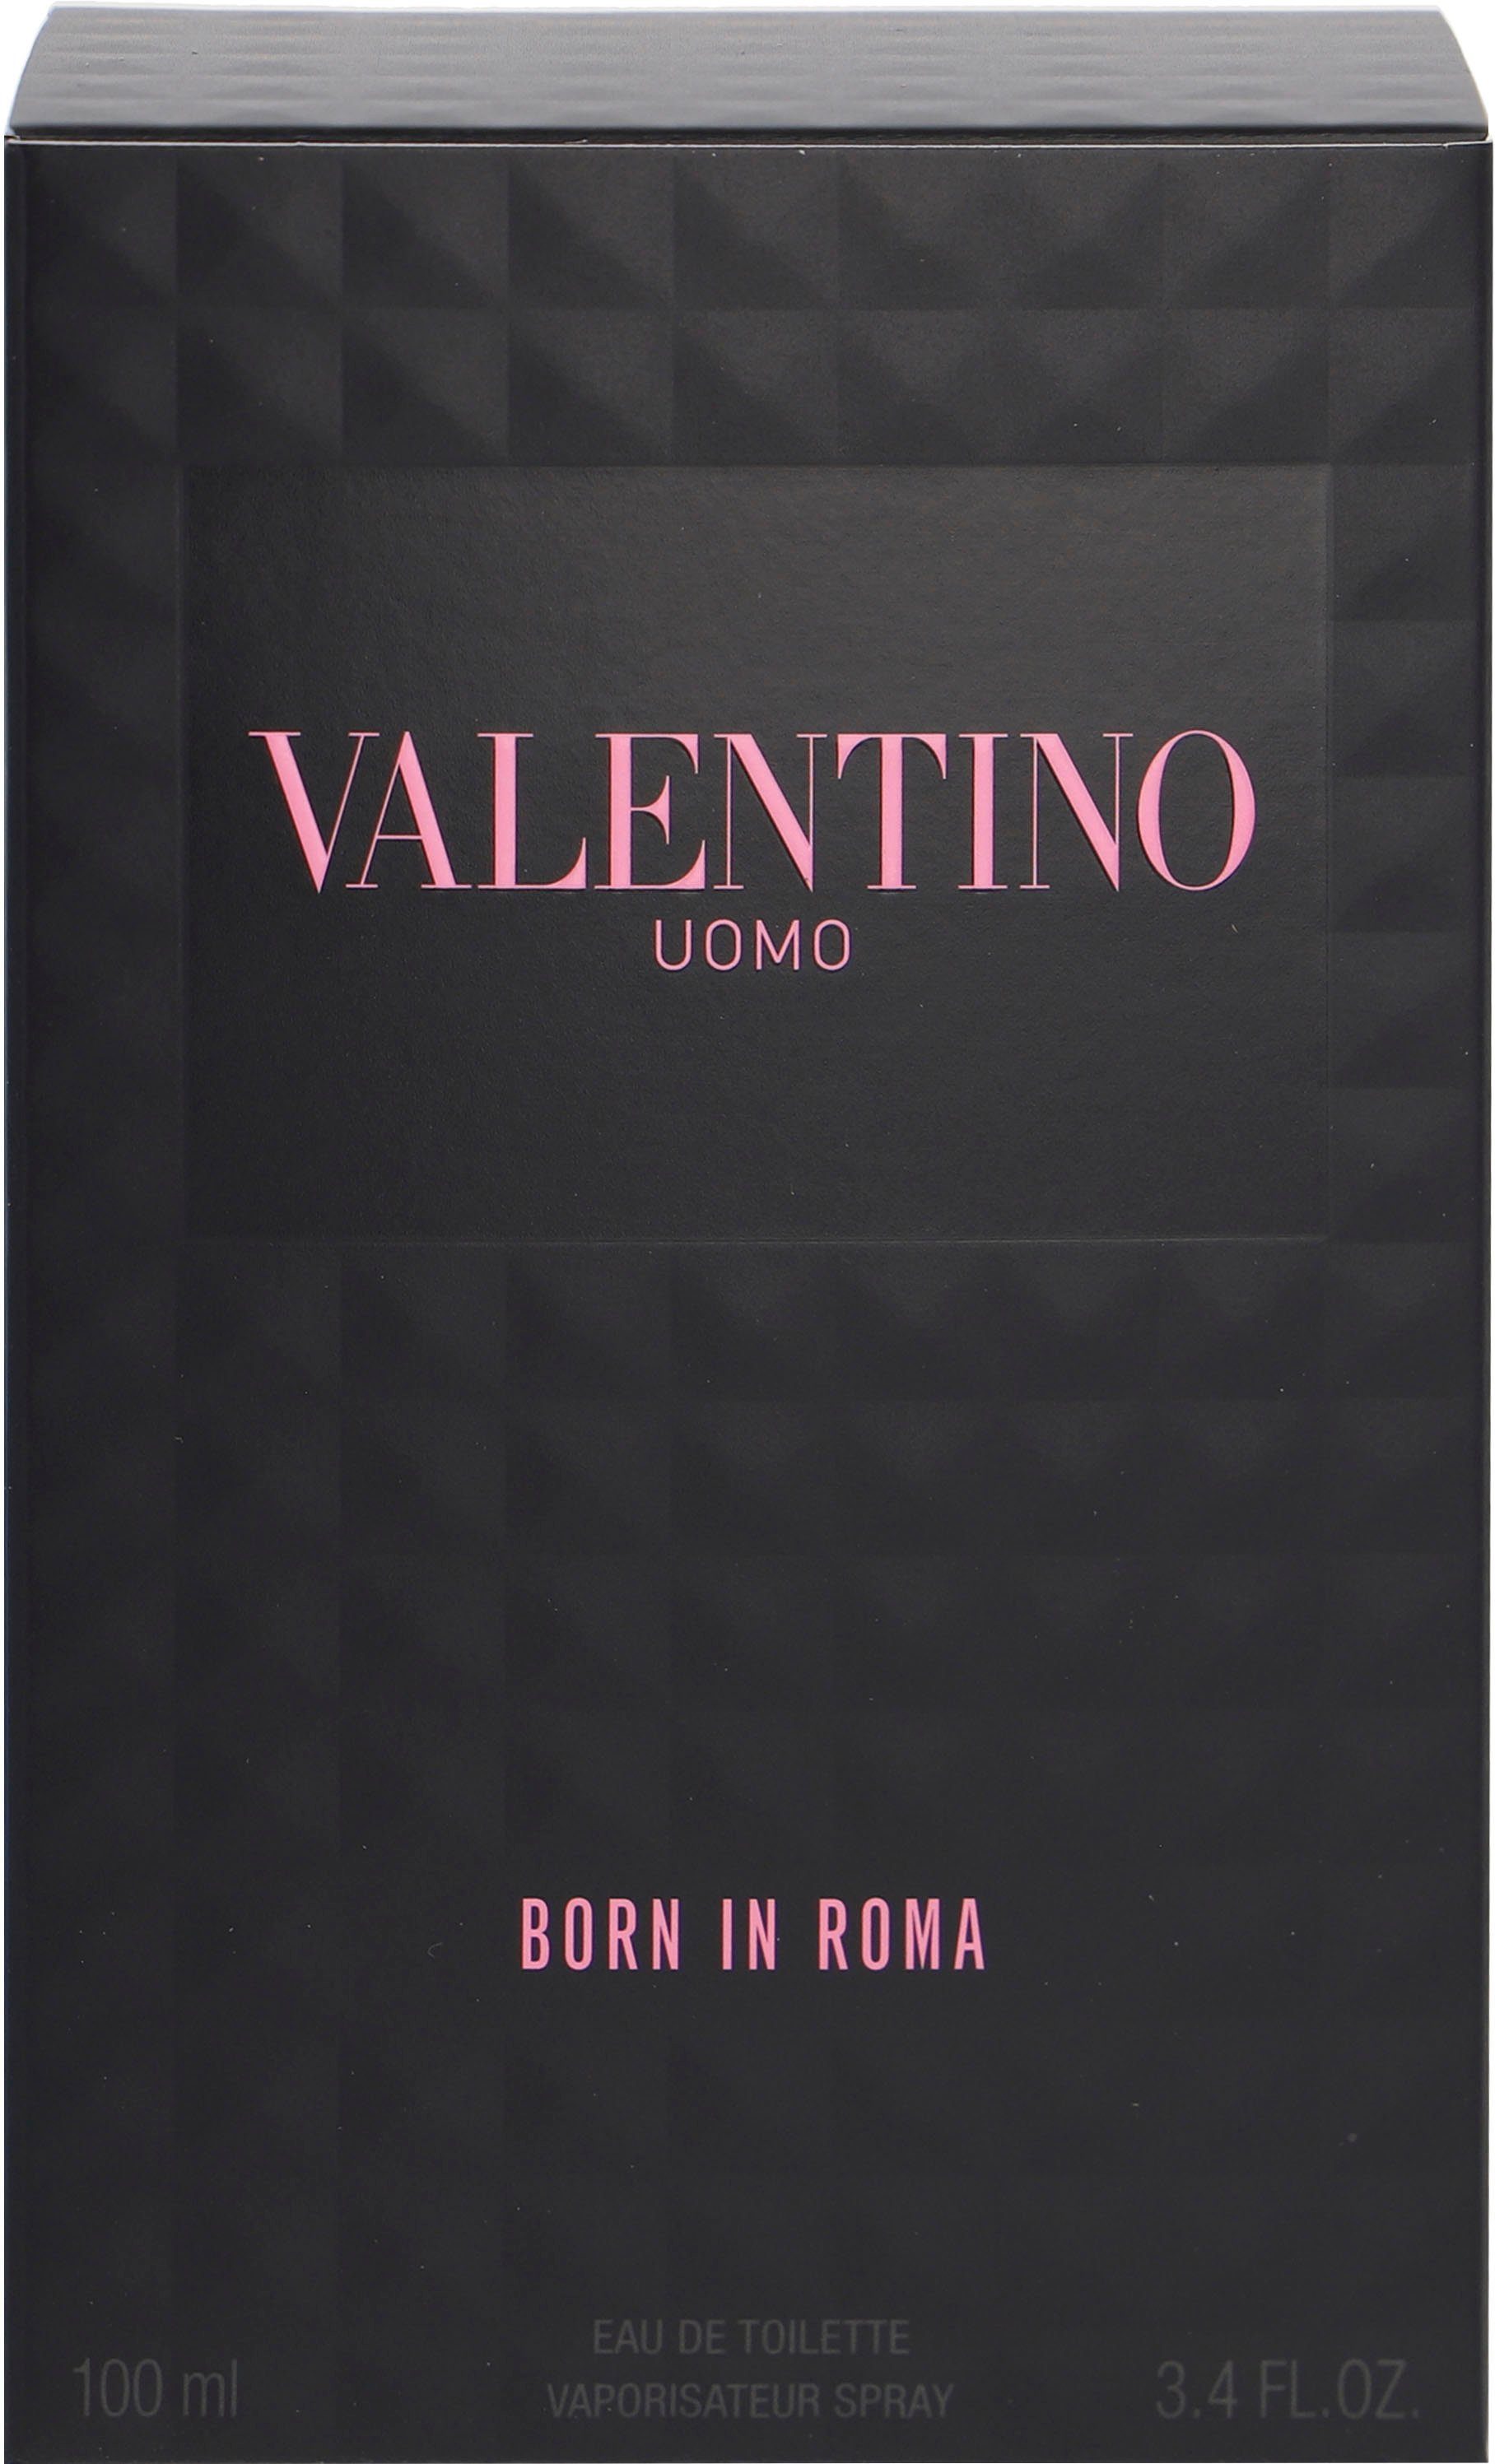 Born Toilette de Uomo Roma Valentino In Eau